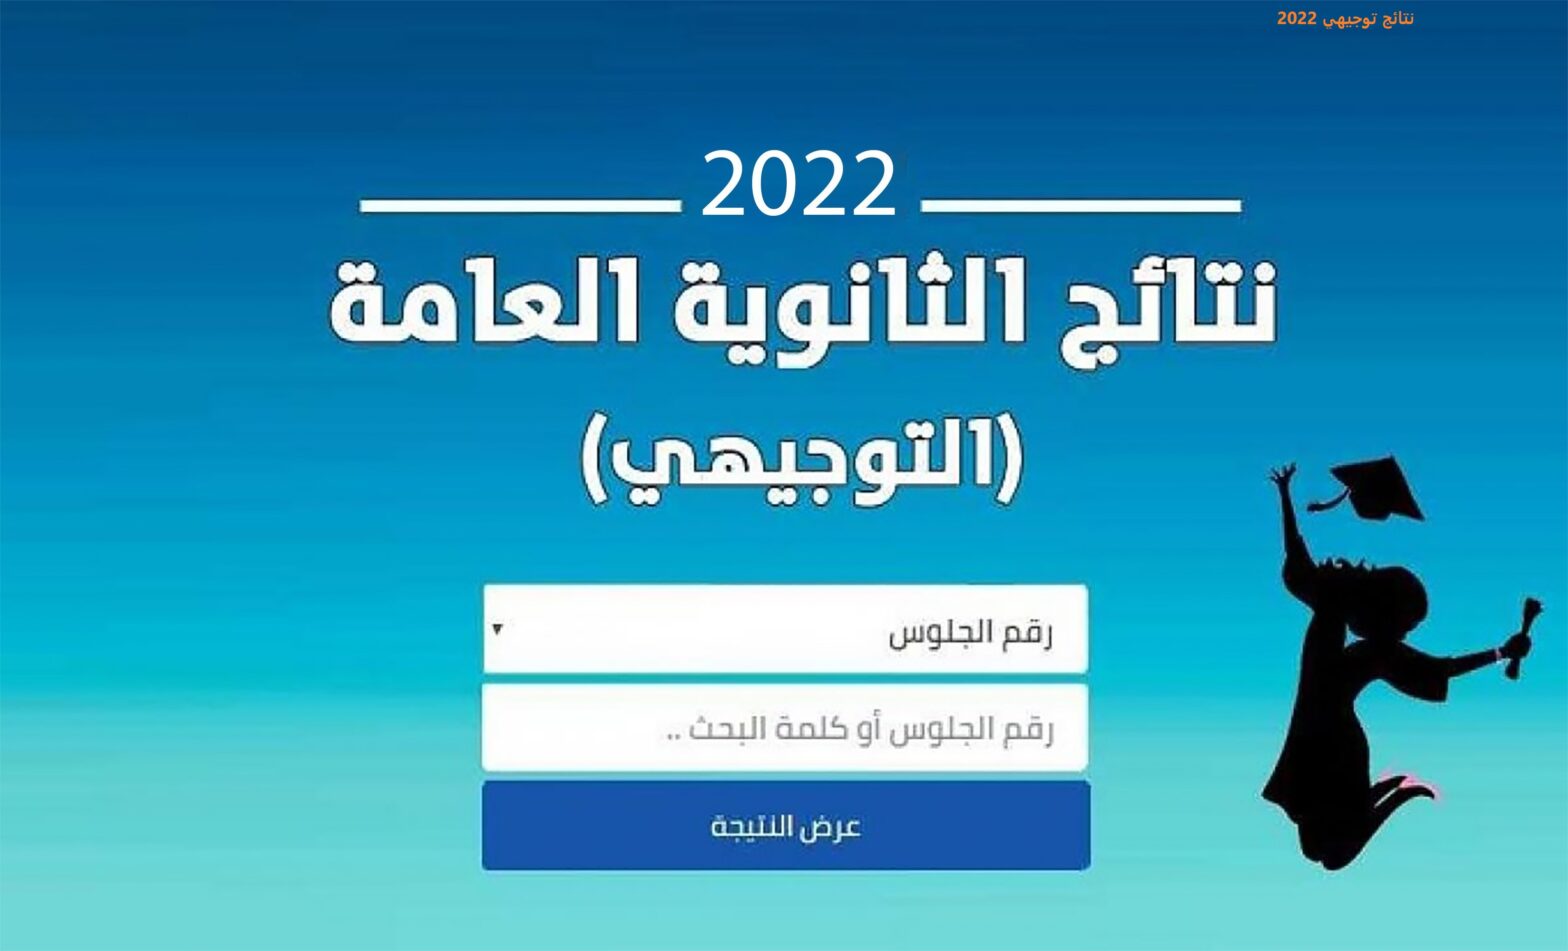 نتائج توجيهي 2022 1568x951 1 4 - مدونة التقنية العربية